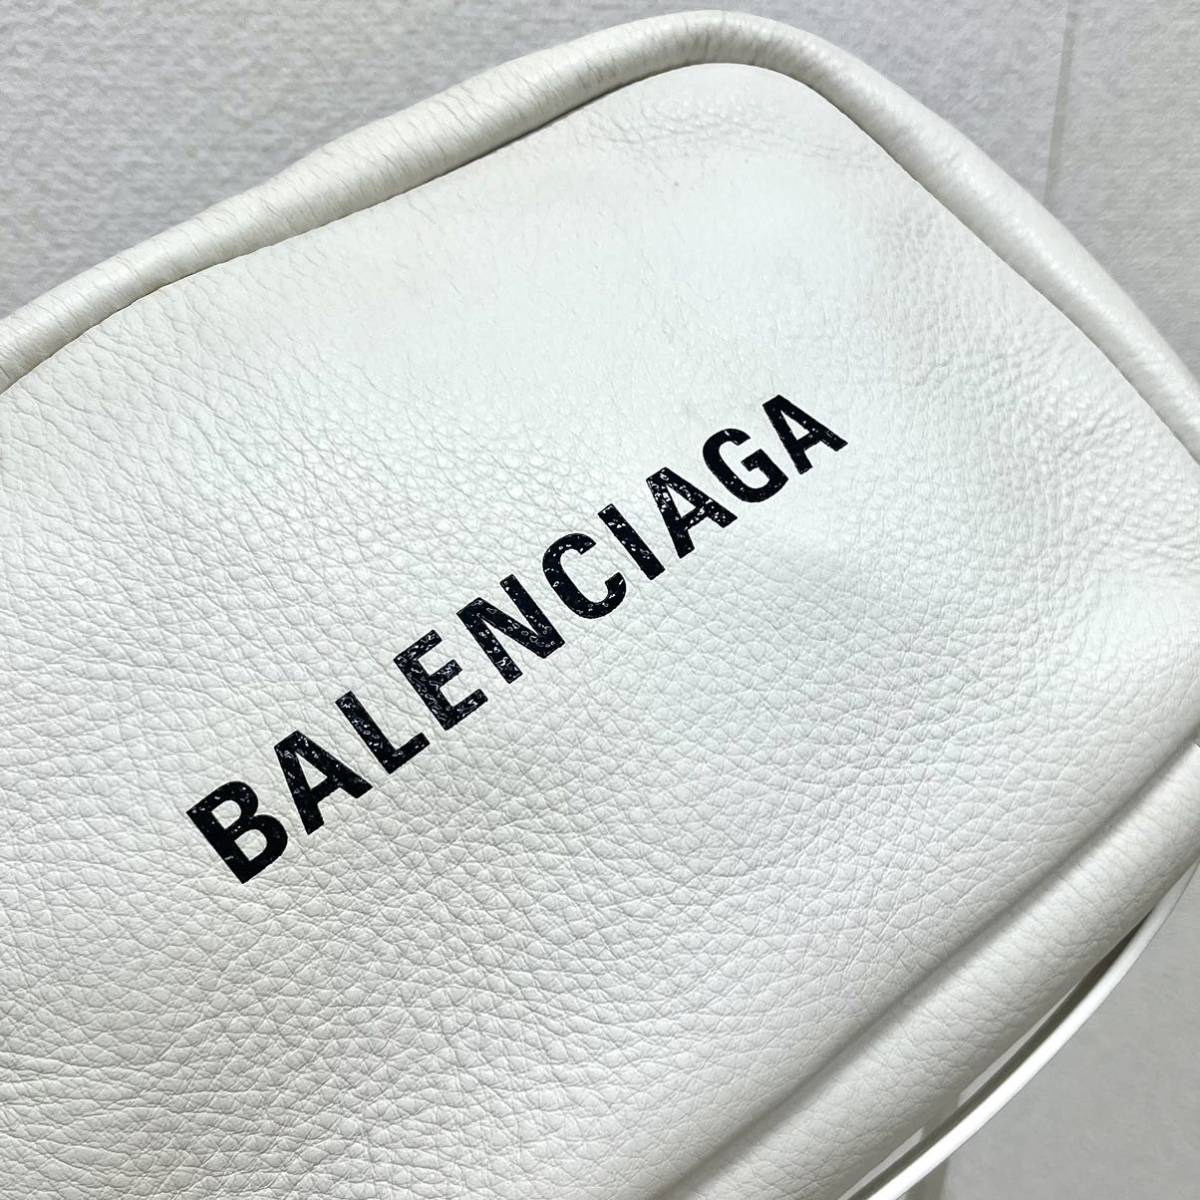  сумка для хранения имеется BALENCIAGA Balenciaga EVERYDAY CAMERA BAG S Every tei Logo кожа камера сумка сумка на плечо 489812 9060